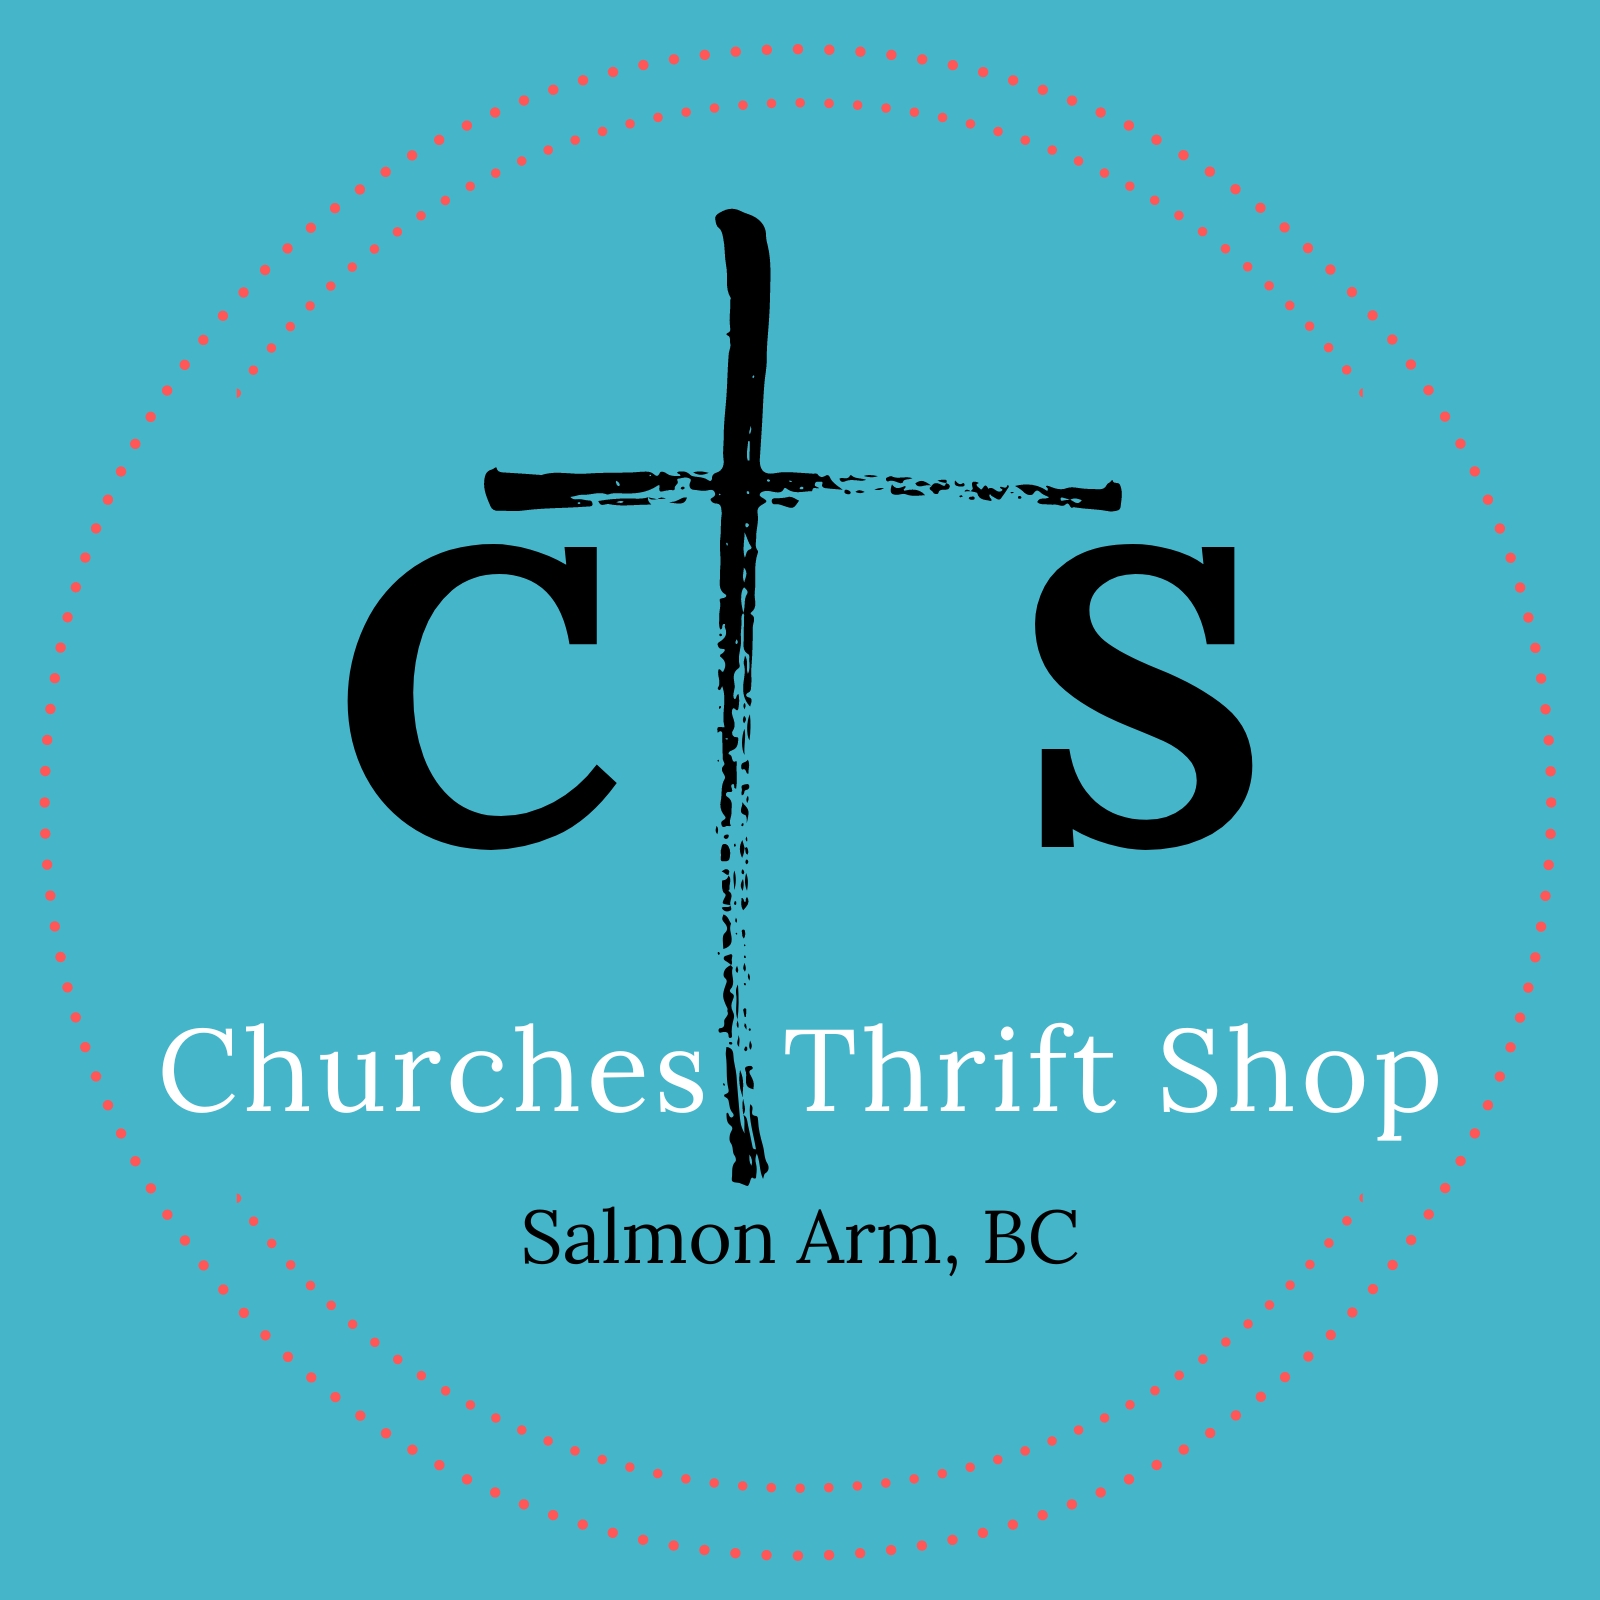 Churches Thrift Shop